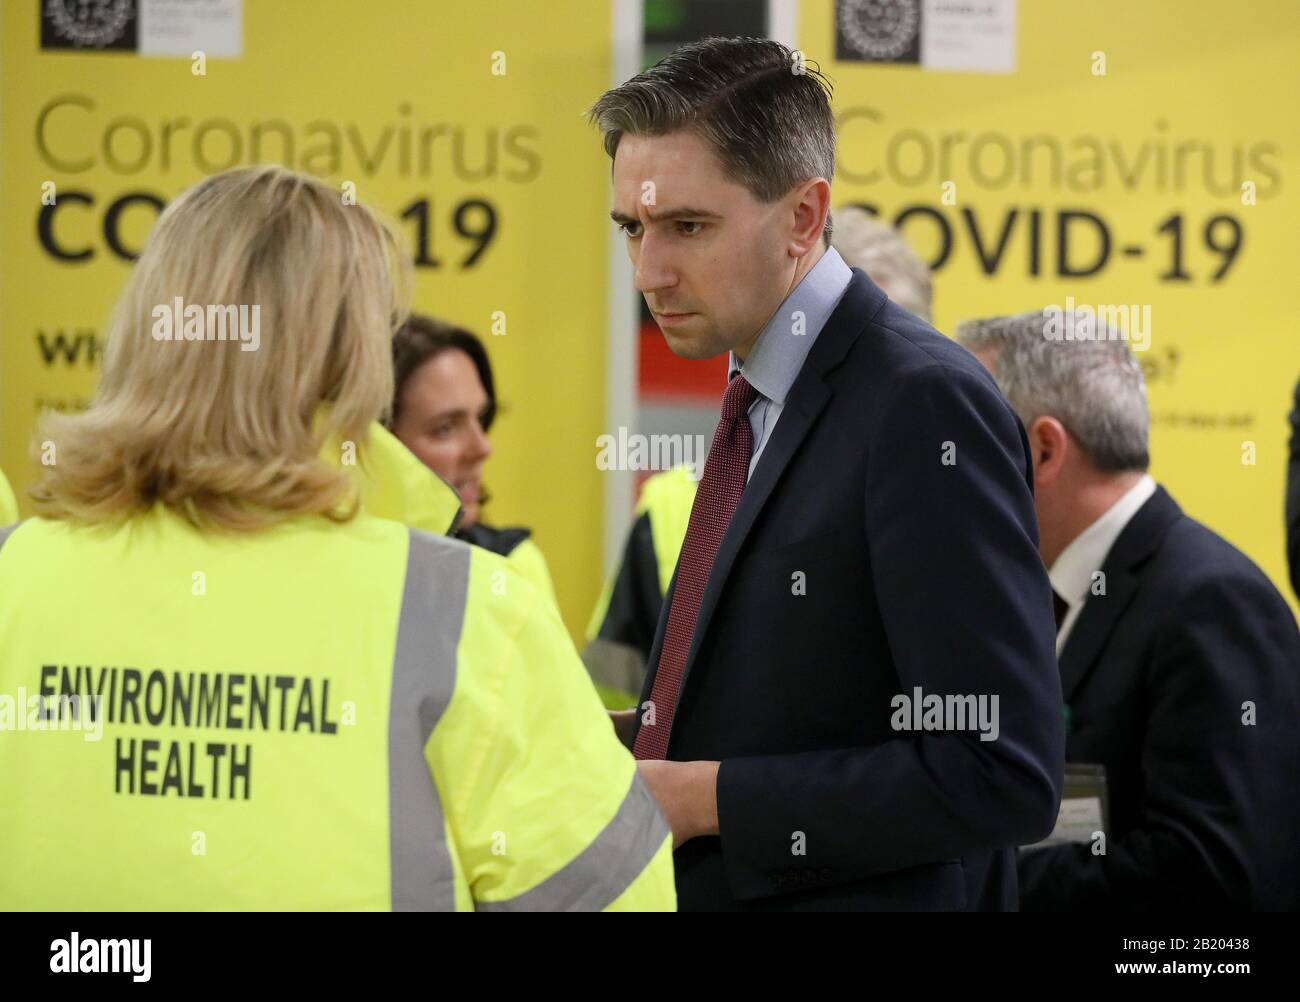 El Ministro de Salud Simon Harris se reúne con el personal de HSE que está activando la campaña de concienciación pública para COVID-19 (Coronavirus) en la sala de equipajes de la Terminal 2 del aeropuerto de Dublín. Foto de stock